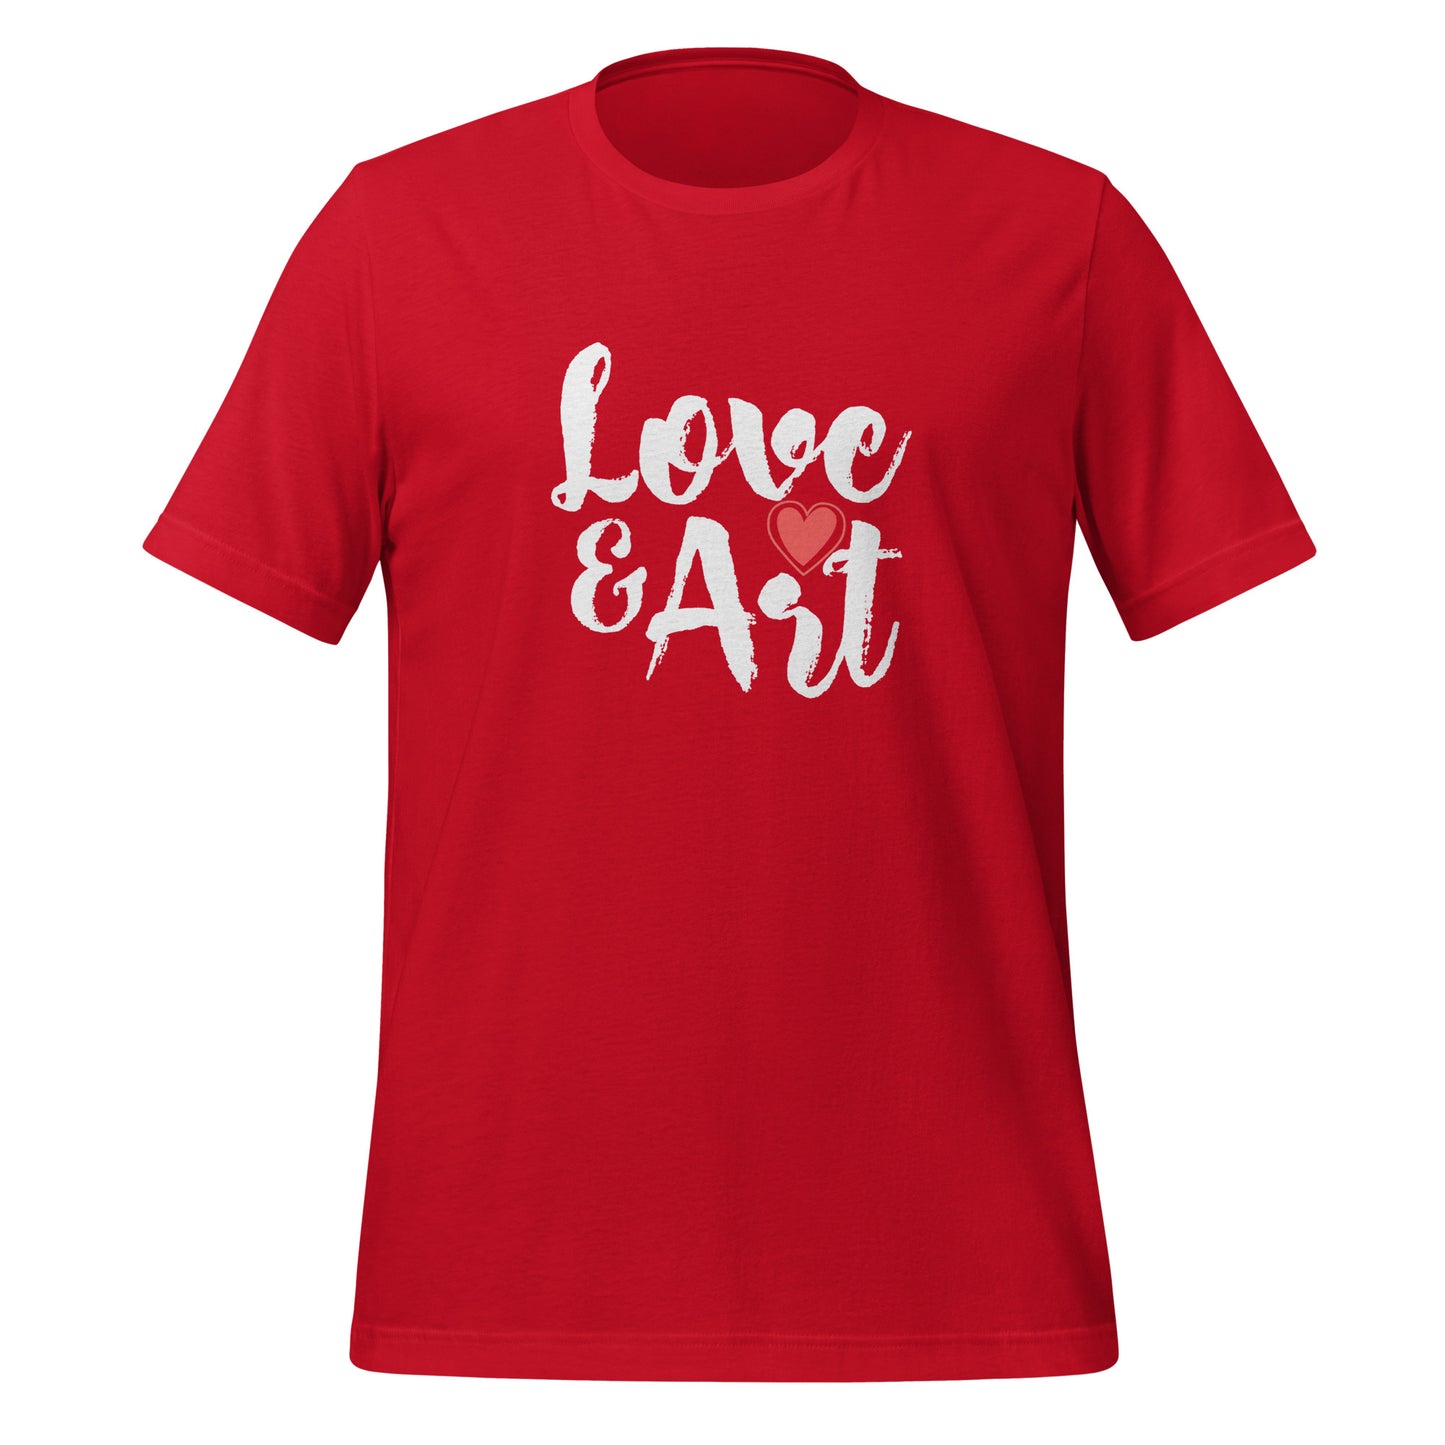 Love & Art Adult T-shirt